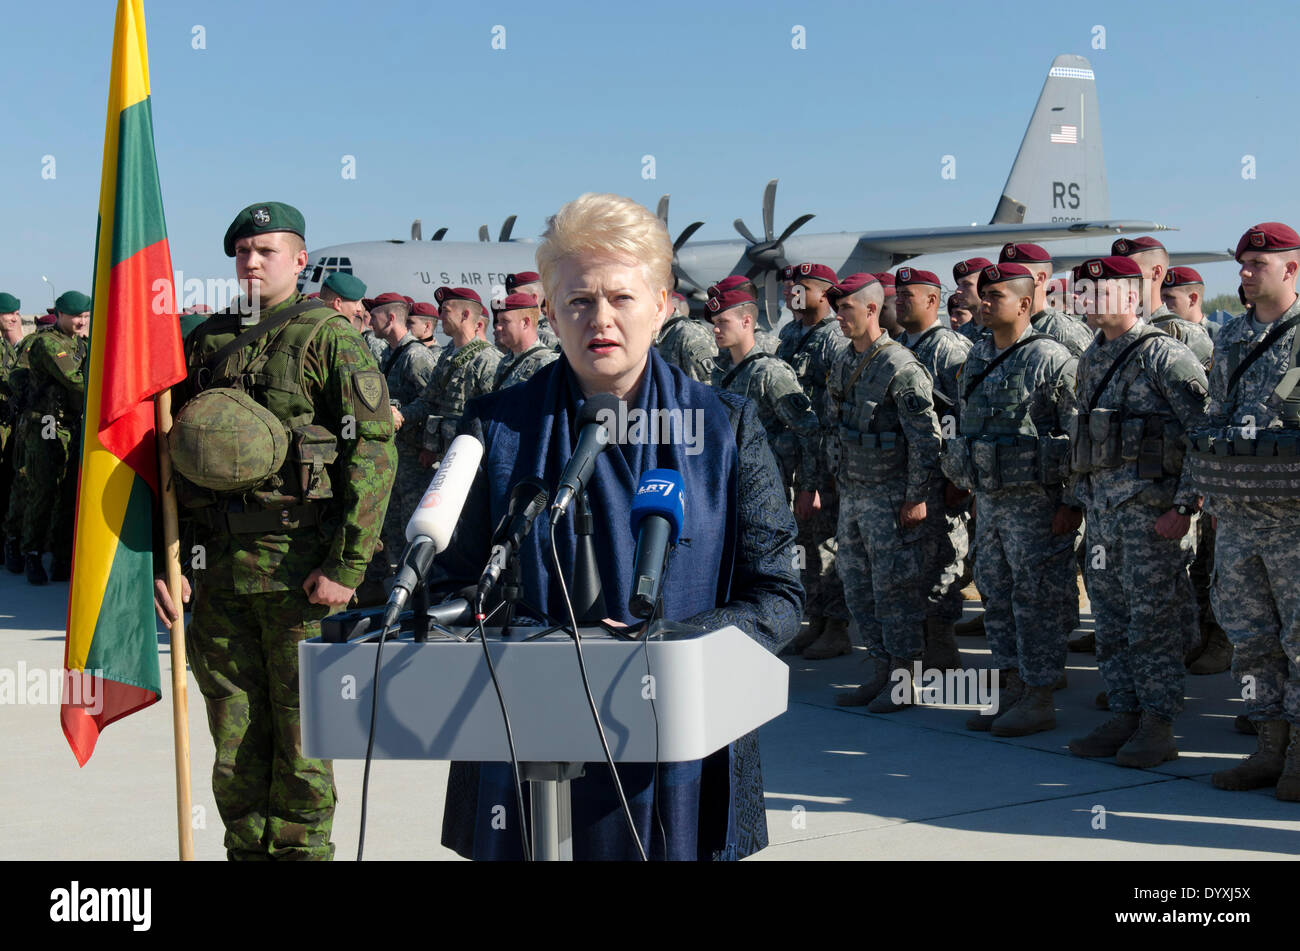 Le Président de la Lituanie Dalia Grybauskaitė nous accueille avec des parachutistes de l'Armée de la 173e Airborne Brigade Combat Team pour des exercices de l'OTAN le 26 avril 2014 à Siauliai, Lituanie. Les soldats ont été déployés pour la Lituanie, la Pologne, la Lettonie et l'Estonie comme montée des tensions avec la Russie sur l'Ukraine. Banque D'Images